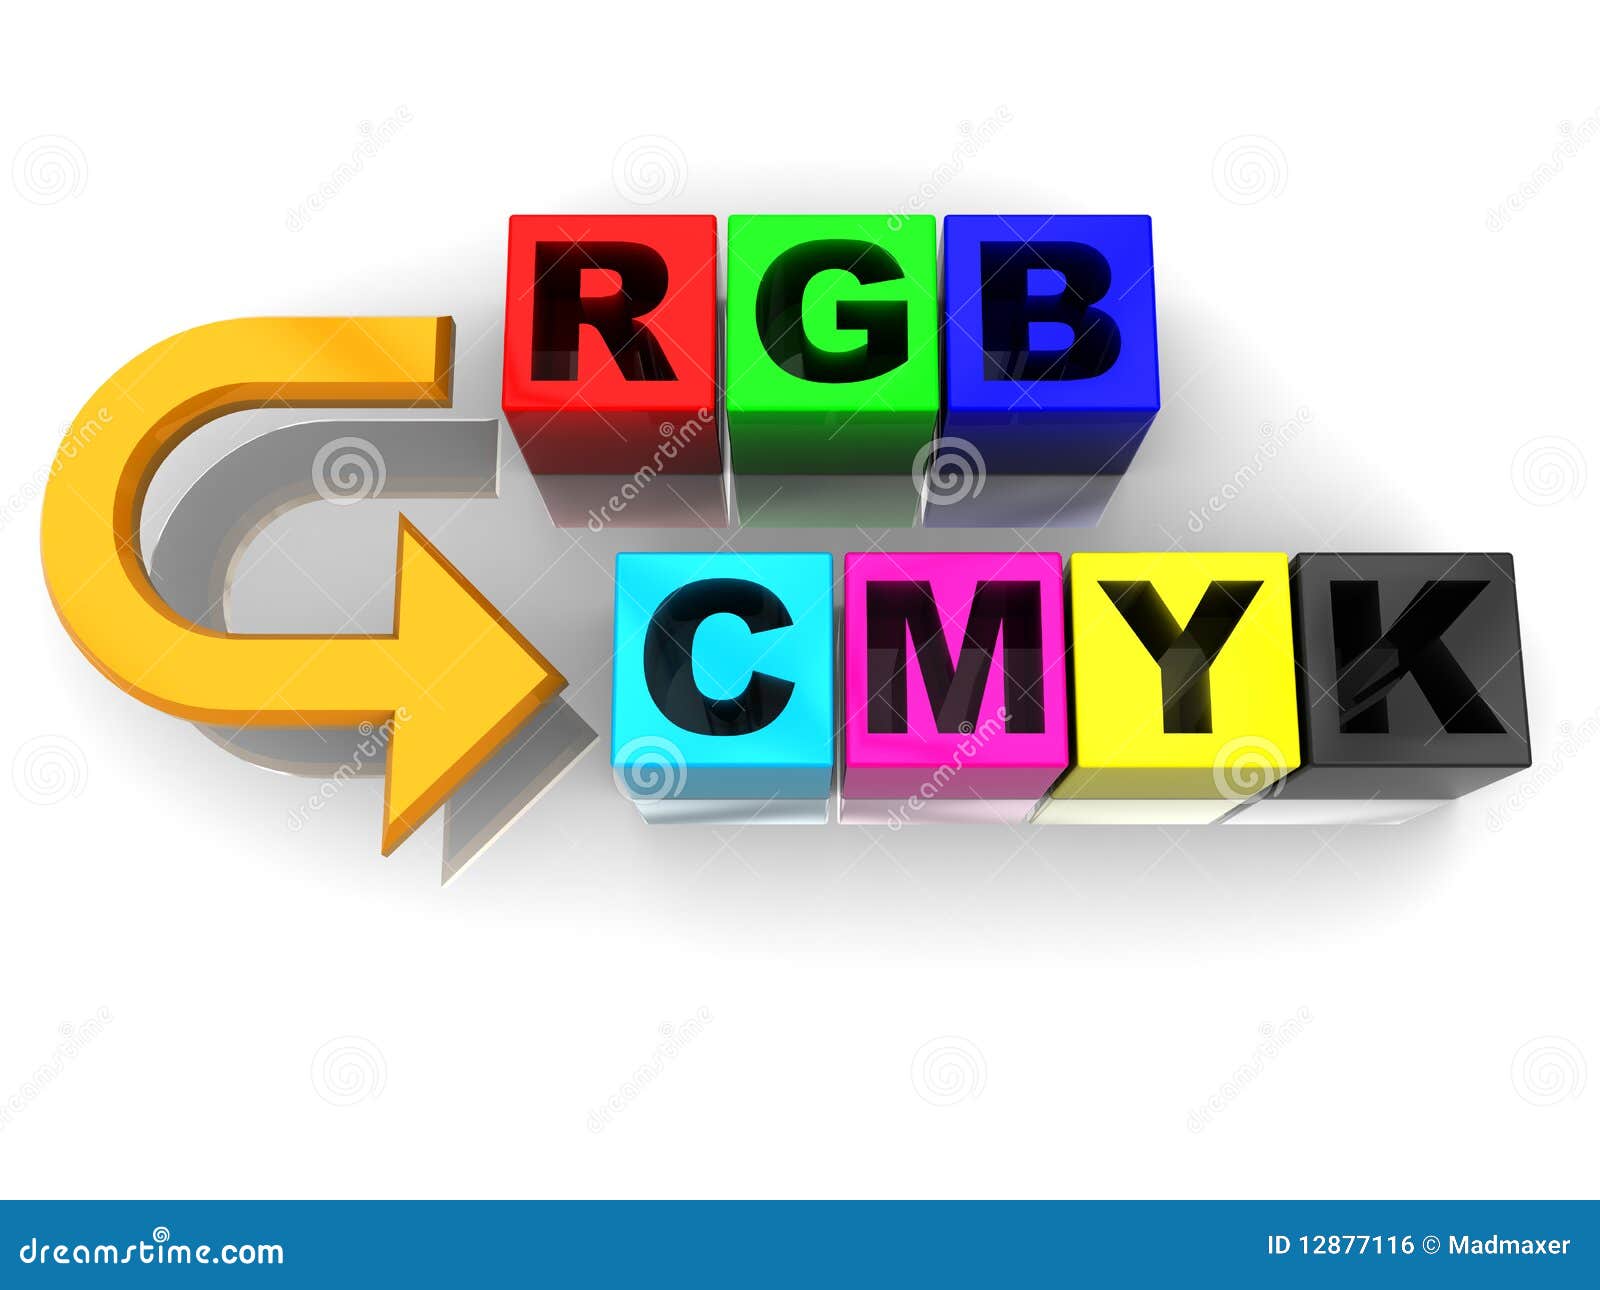 Adobe Pdf Rgb To Cmyk Conversion